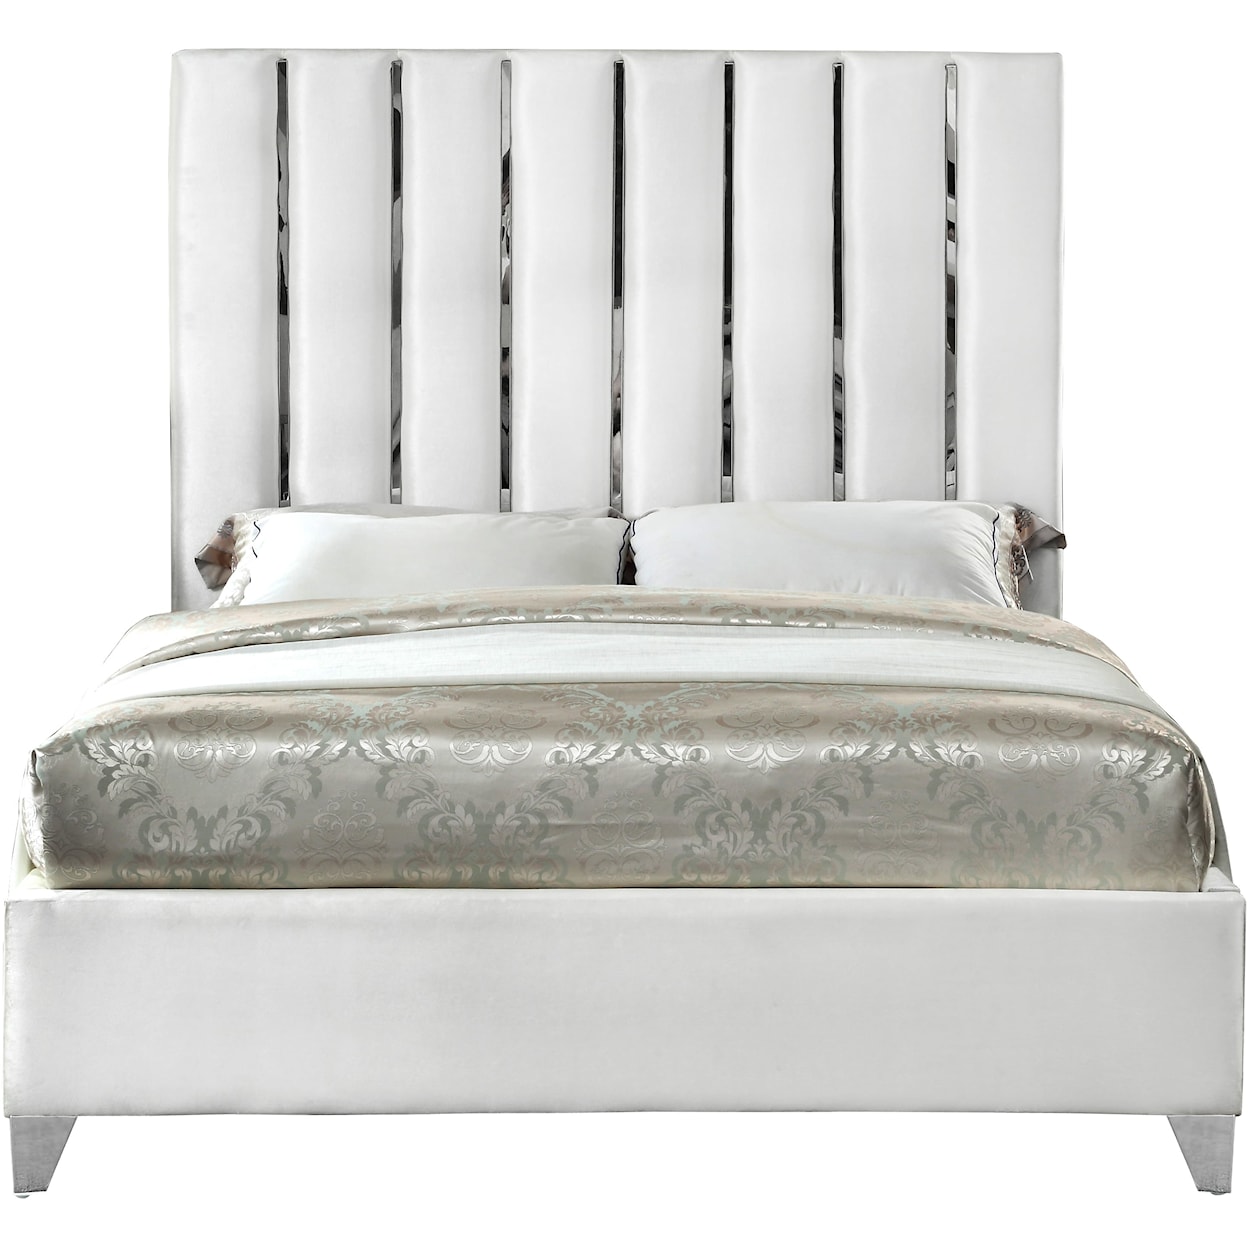 Meridian Furniture Enzo Queen Bed